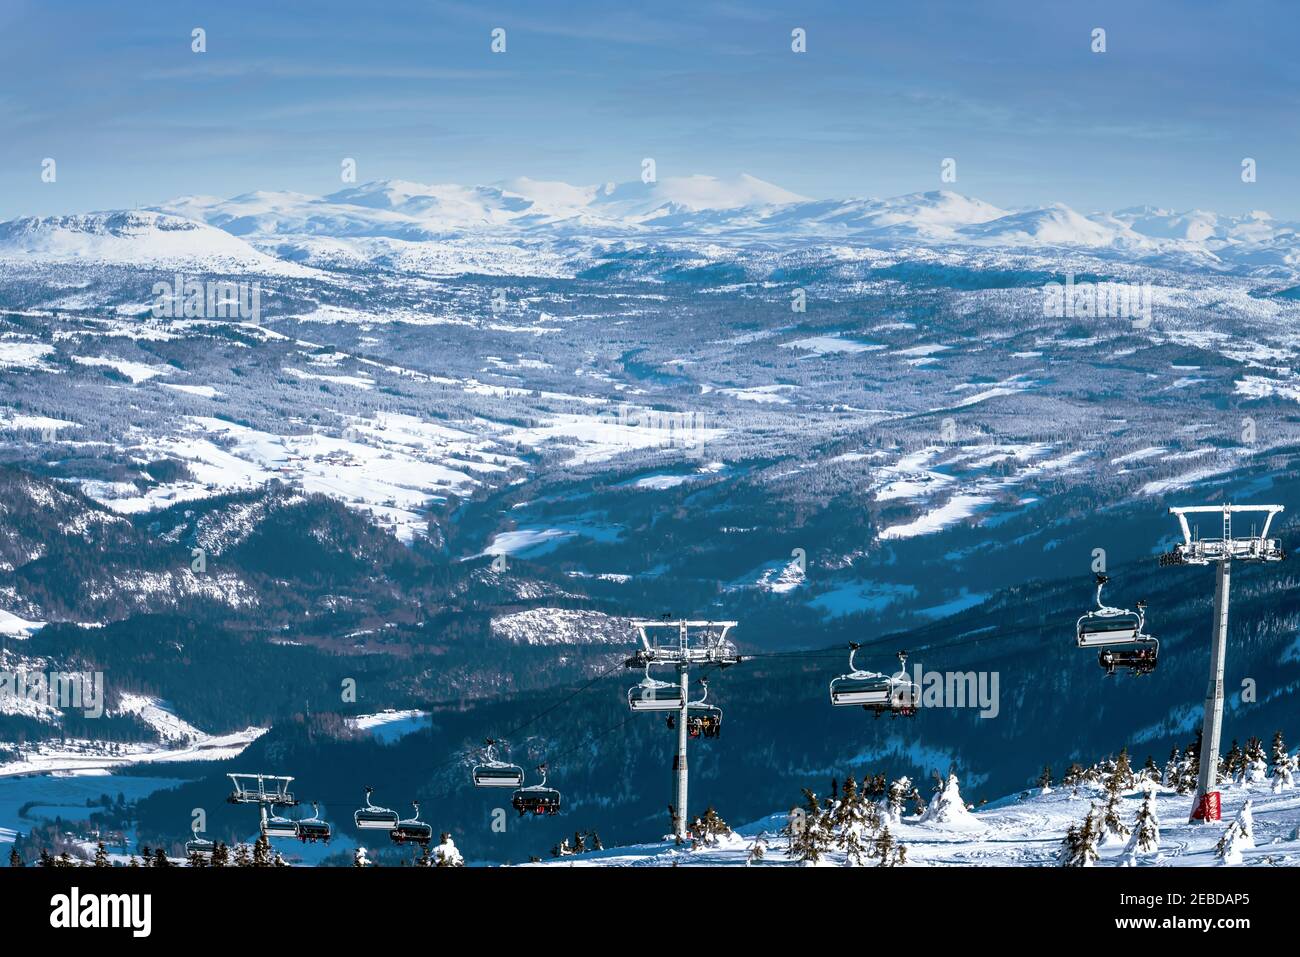 Vista panoramica su una stazione sciistica con persone in seggiovia. Foto Stock